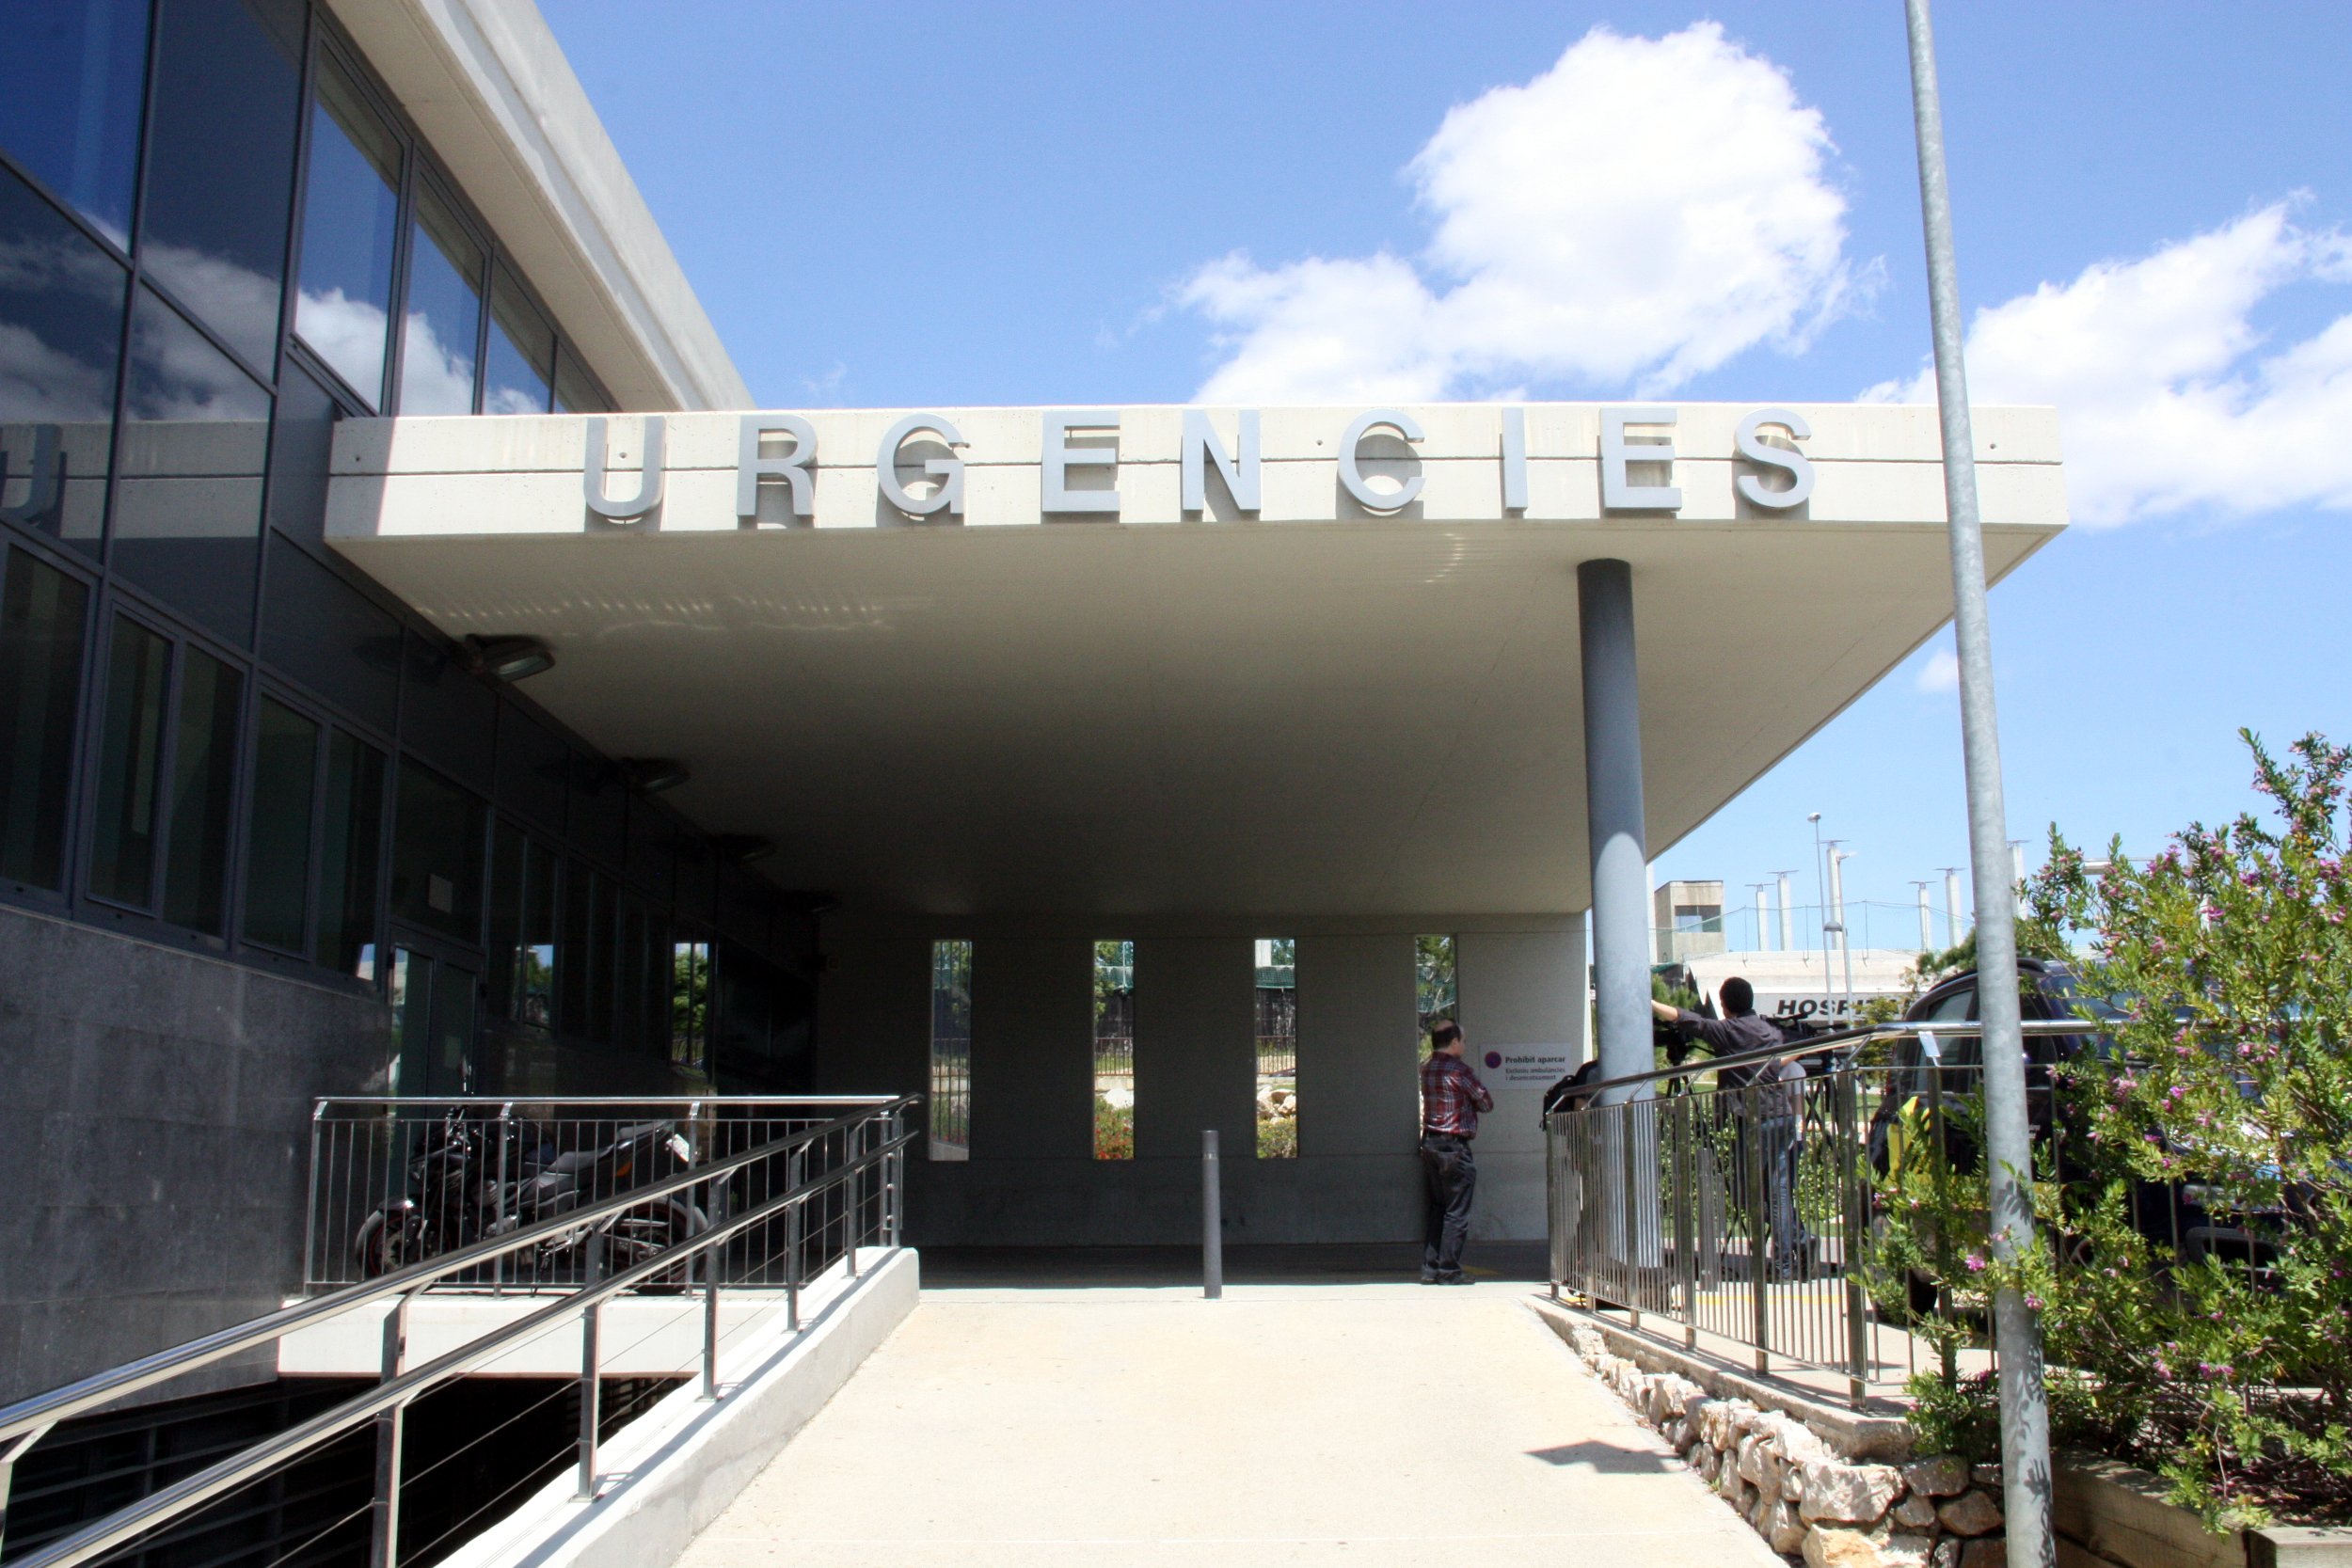 El aumento casos de Covid en el hospital de Figueres obliga a restringir visitas